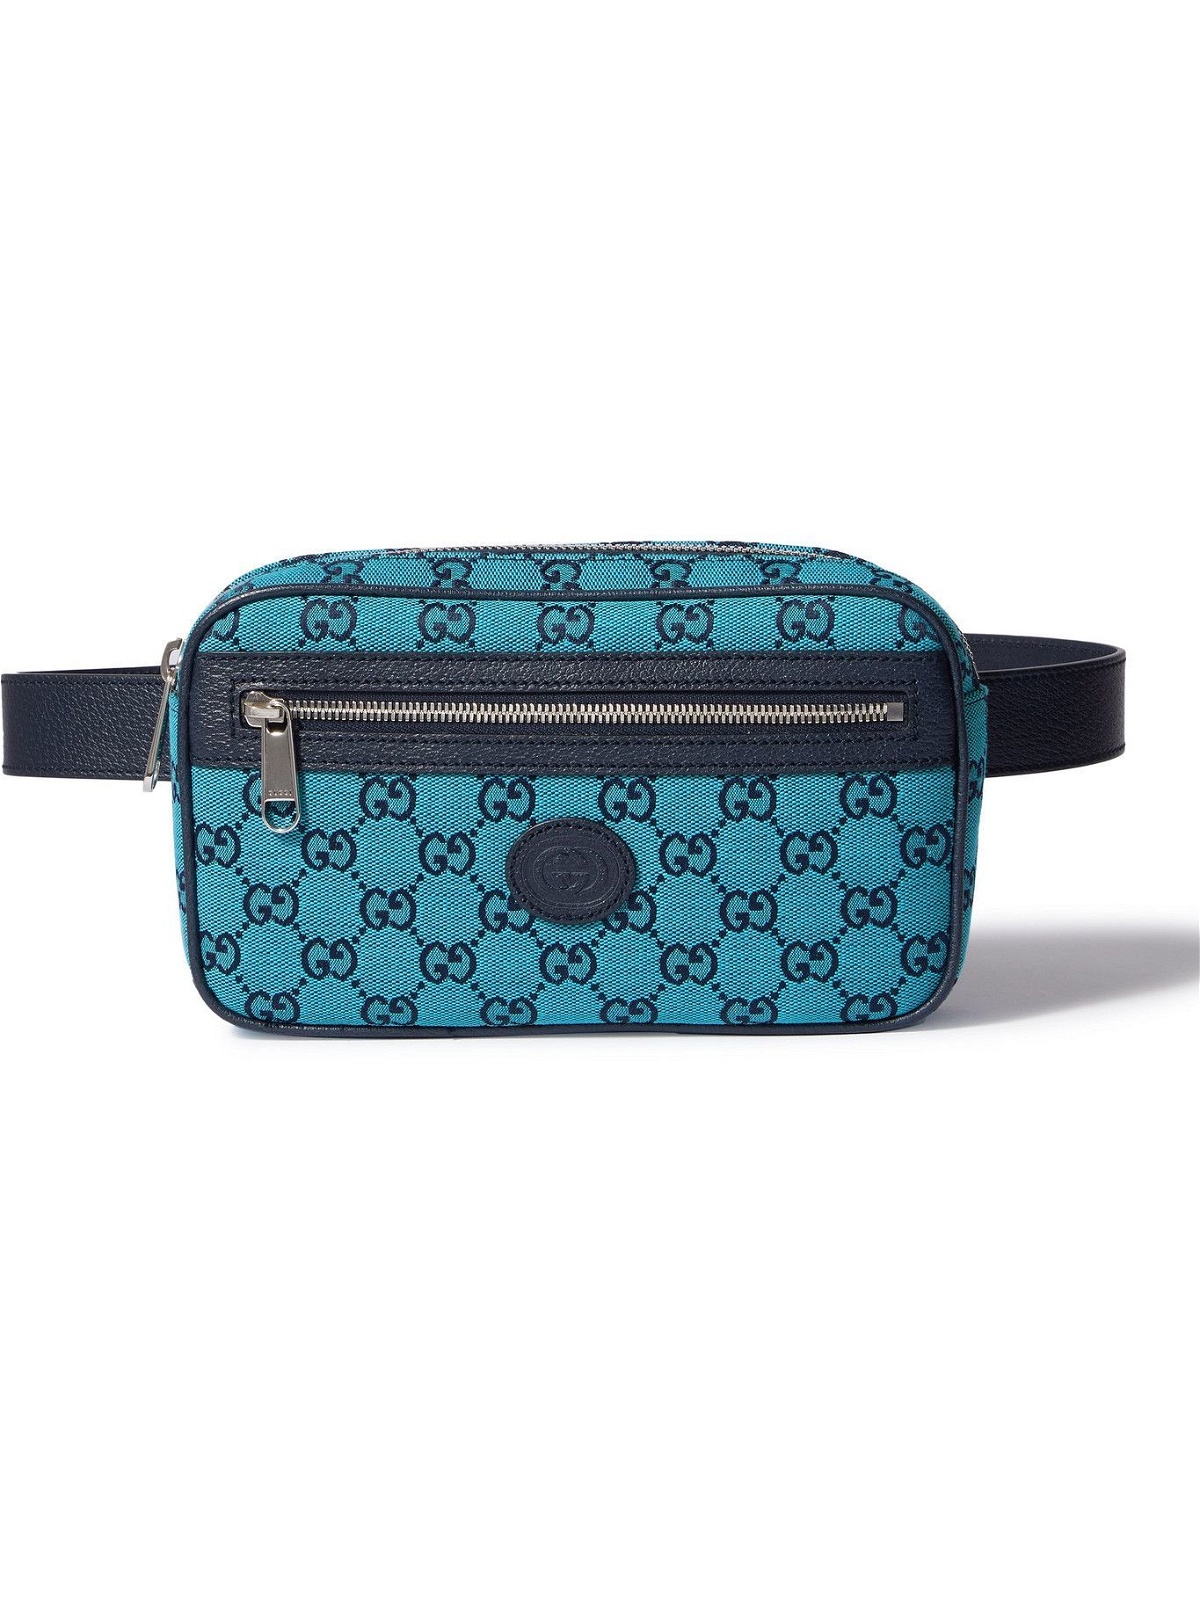 Gucci Blue Monogram Belt for Sale in Chula Vista, CA - OfferUp